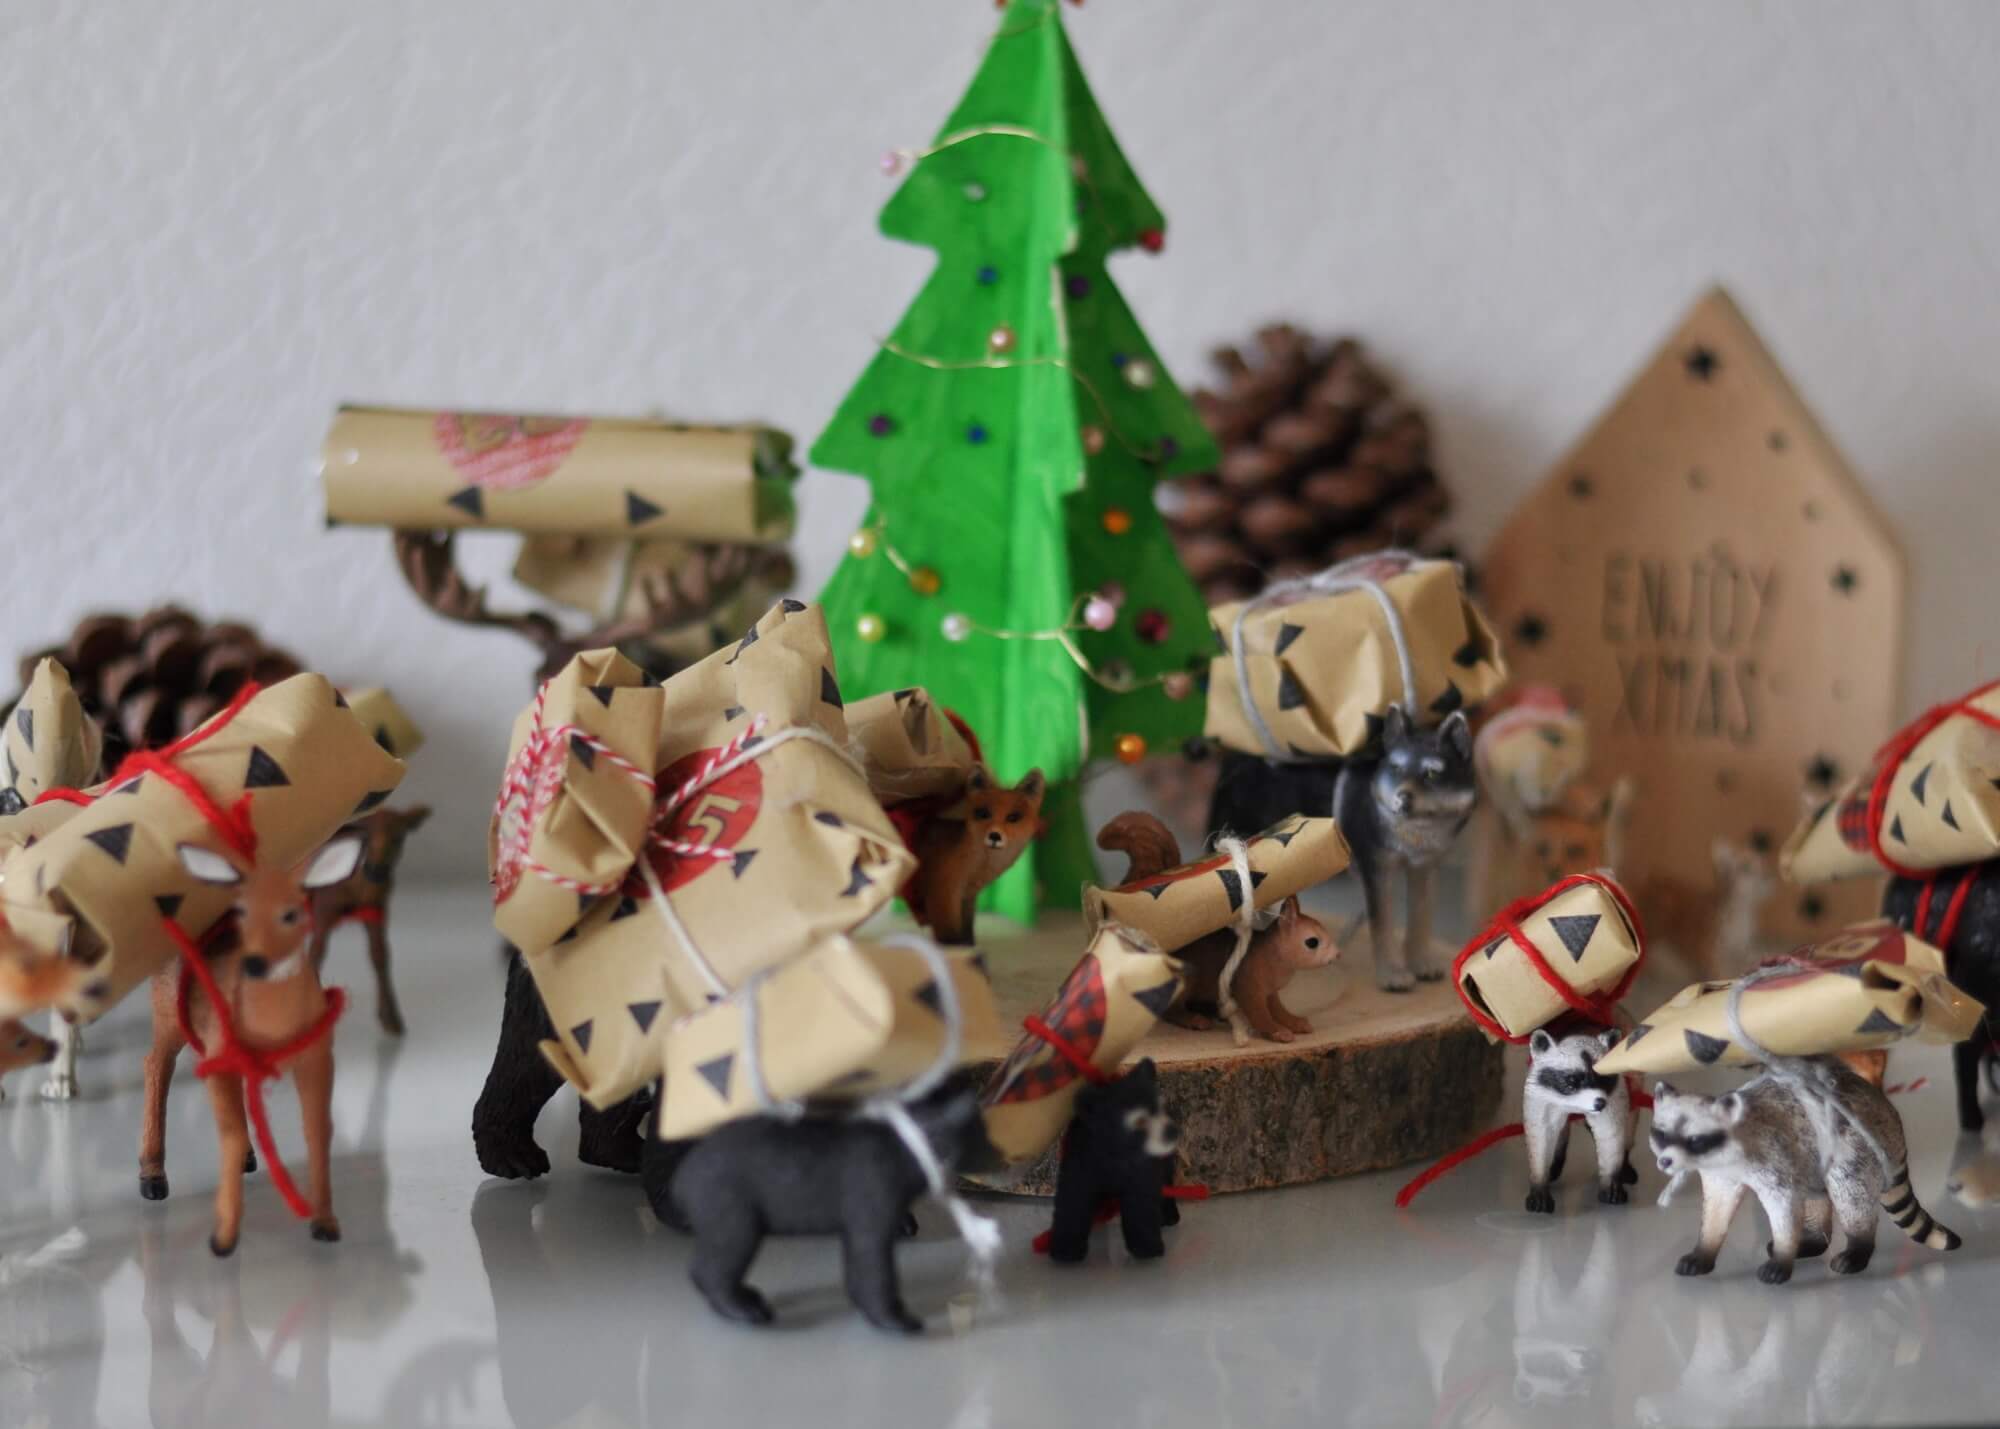 Es sollte unbedingt ein Kalender werden, der nachhaltige Kleinigkeiten mit Süßem verbindet - und dazu nicht besonders bastel-aufwendig ist. Ich zeige euch, wie man einen Schleichtier-Adbentskalender bastelt. #adventskalender #schleichtiere #waldtiere #tierfiguren #diy #basteln #kinder #tiere #weihnachten